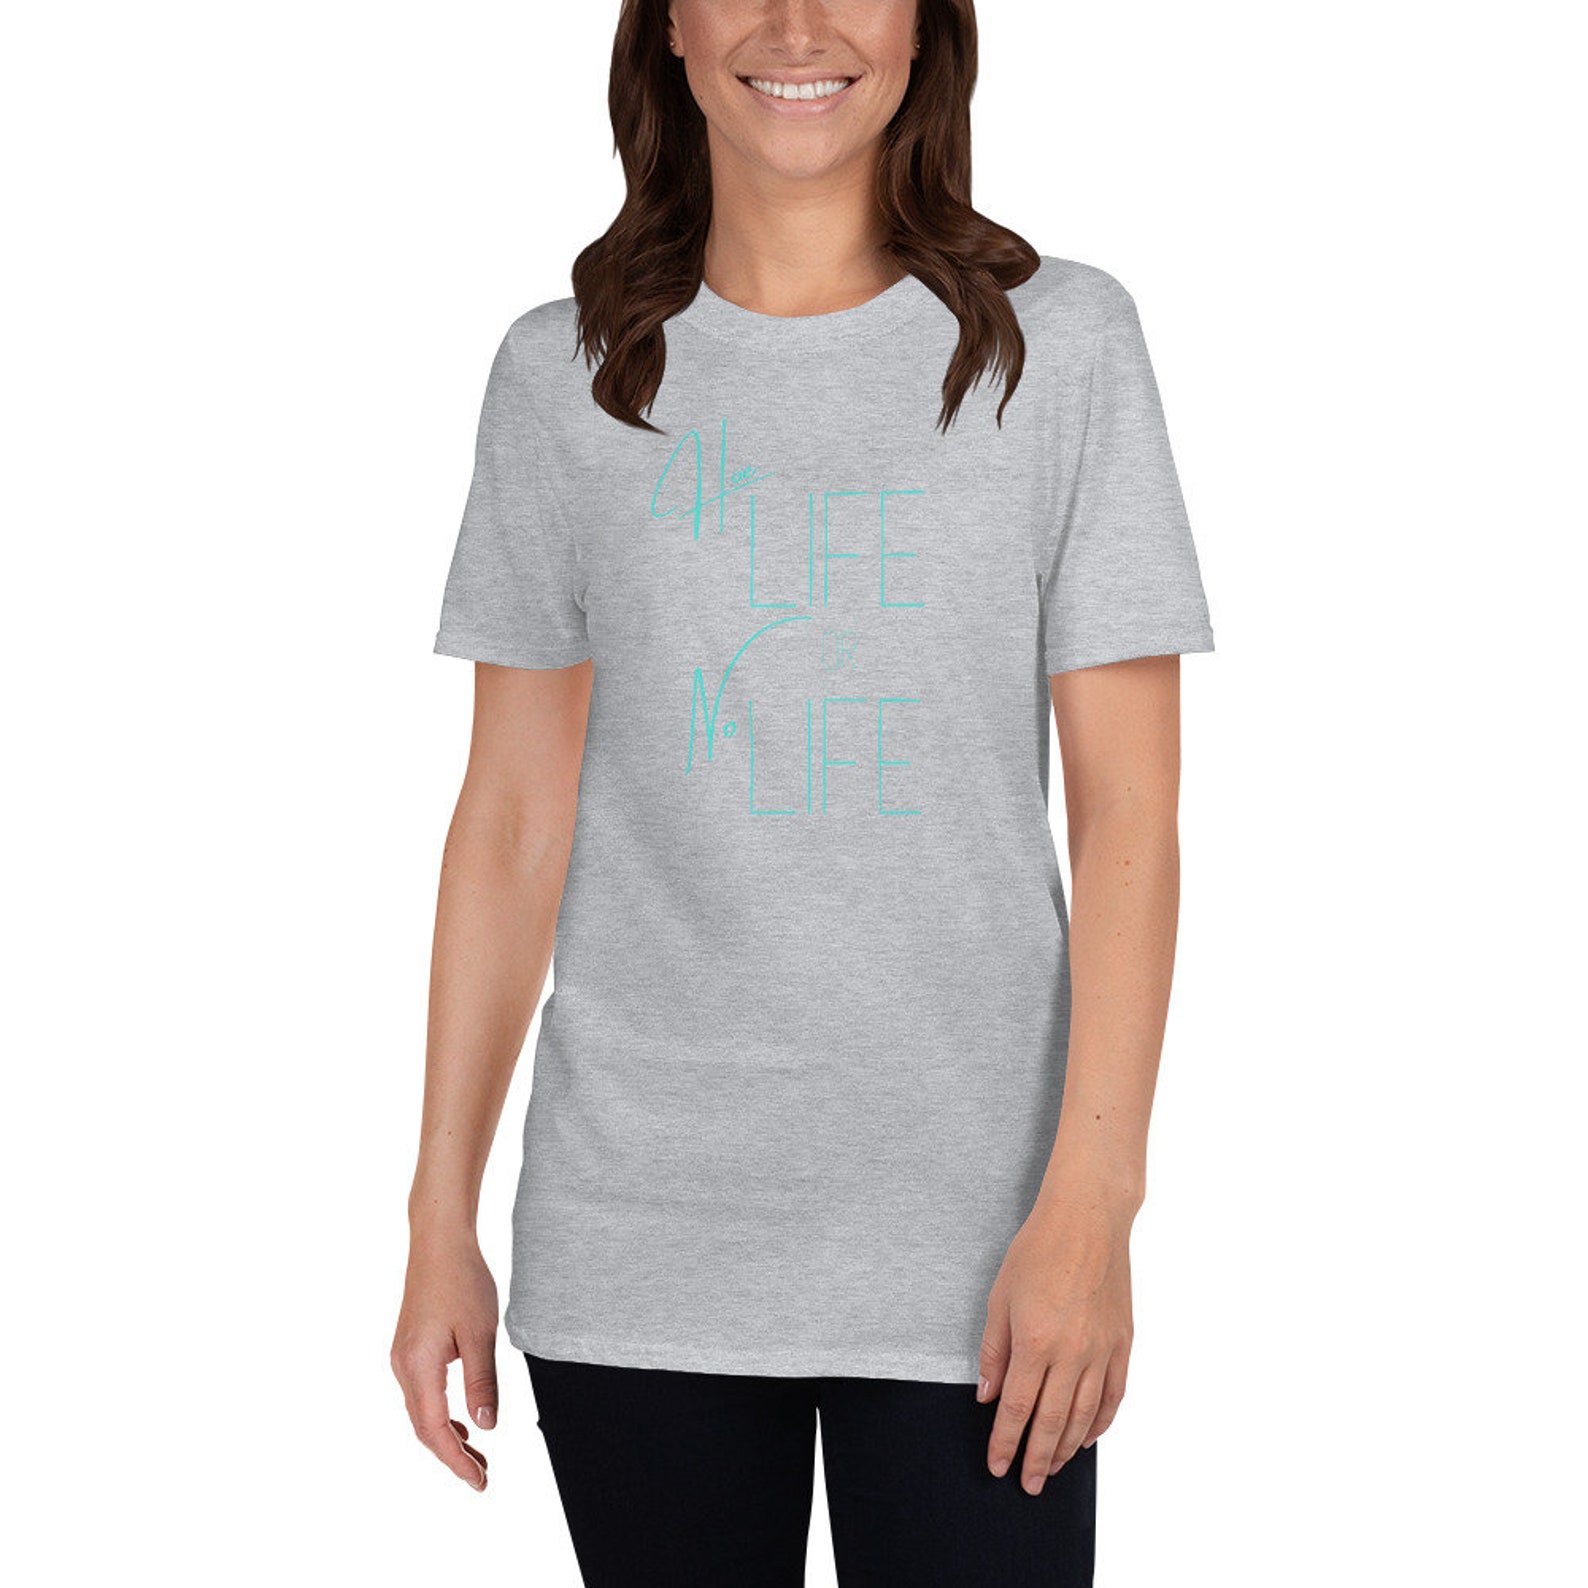 Hoe Life or No Life Short-Sleeve Unisex T-Shirt | Etsy